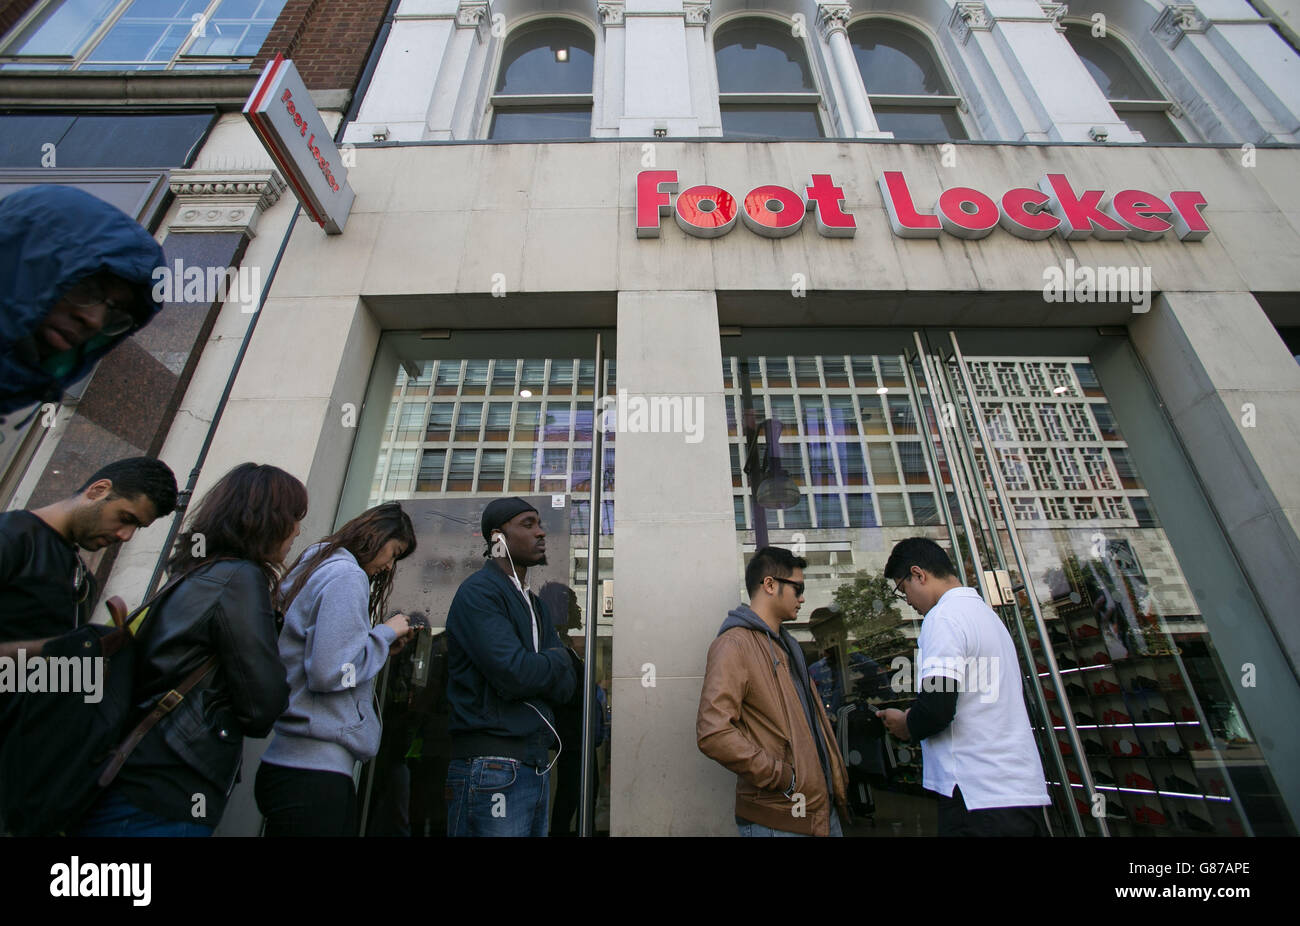 La hace cola fuera de Foot Locker Street, Londres, para comprar un par de entrenadores Adidas Boost 350, diseñados por el músico Kanye West Fotografía de stock - Alamy